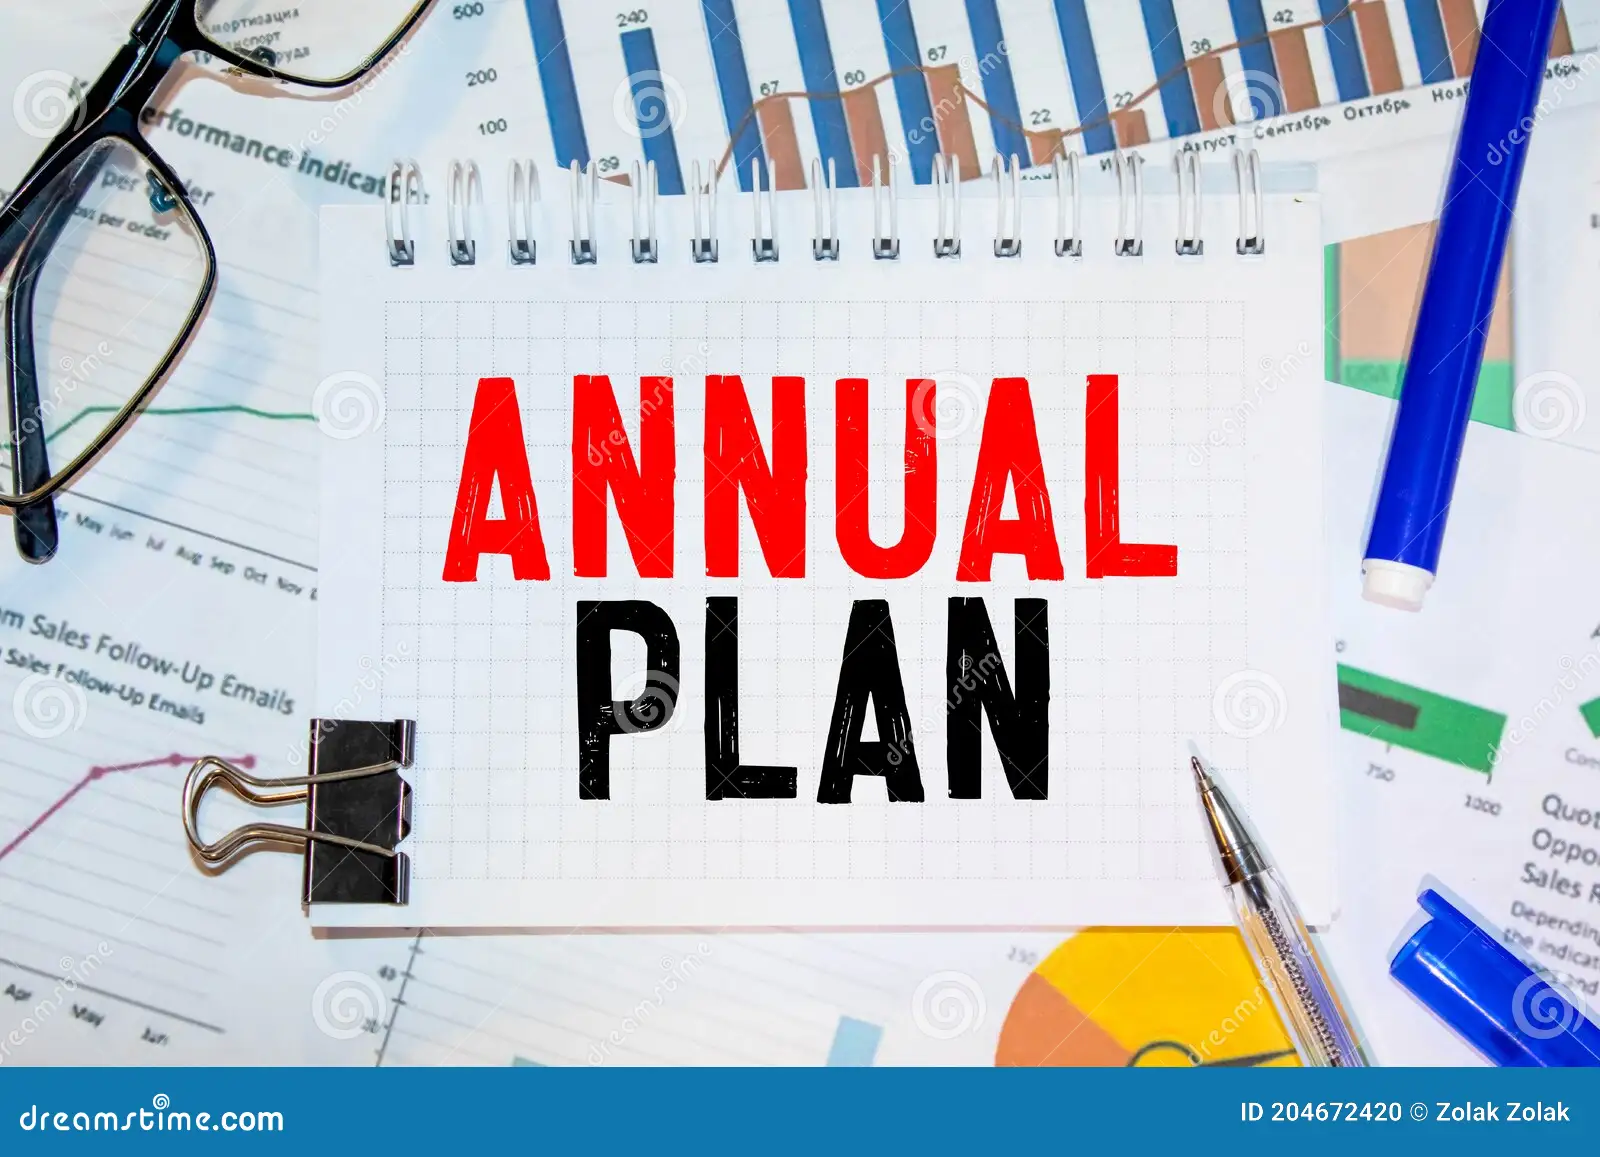 Annual Plan: Pentingnya Perencanaan Tahunan dalam Mencapai Kesuksesan